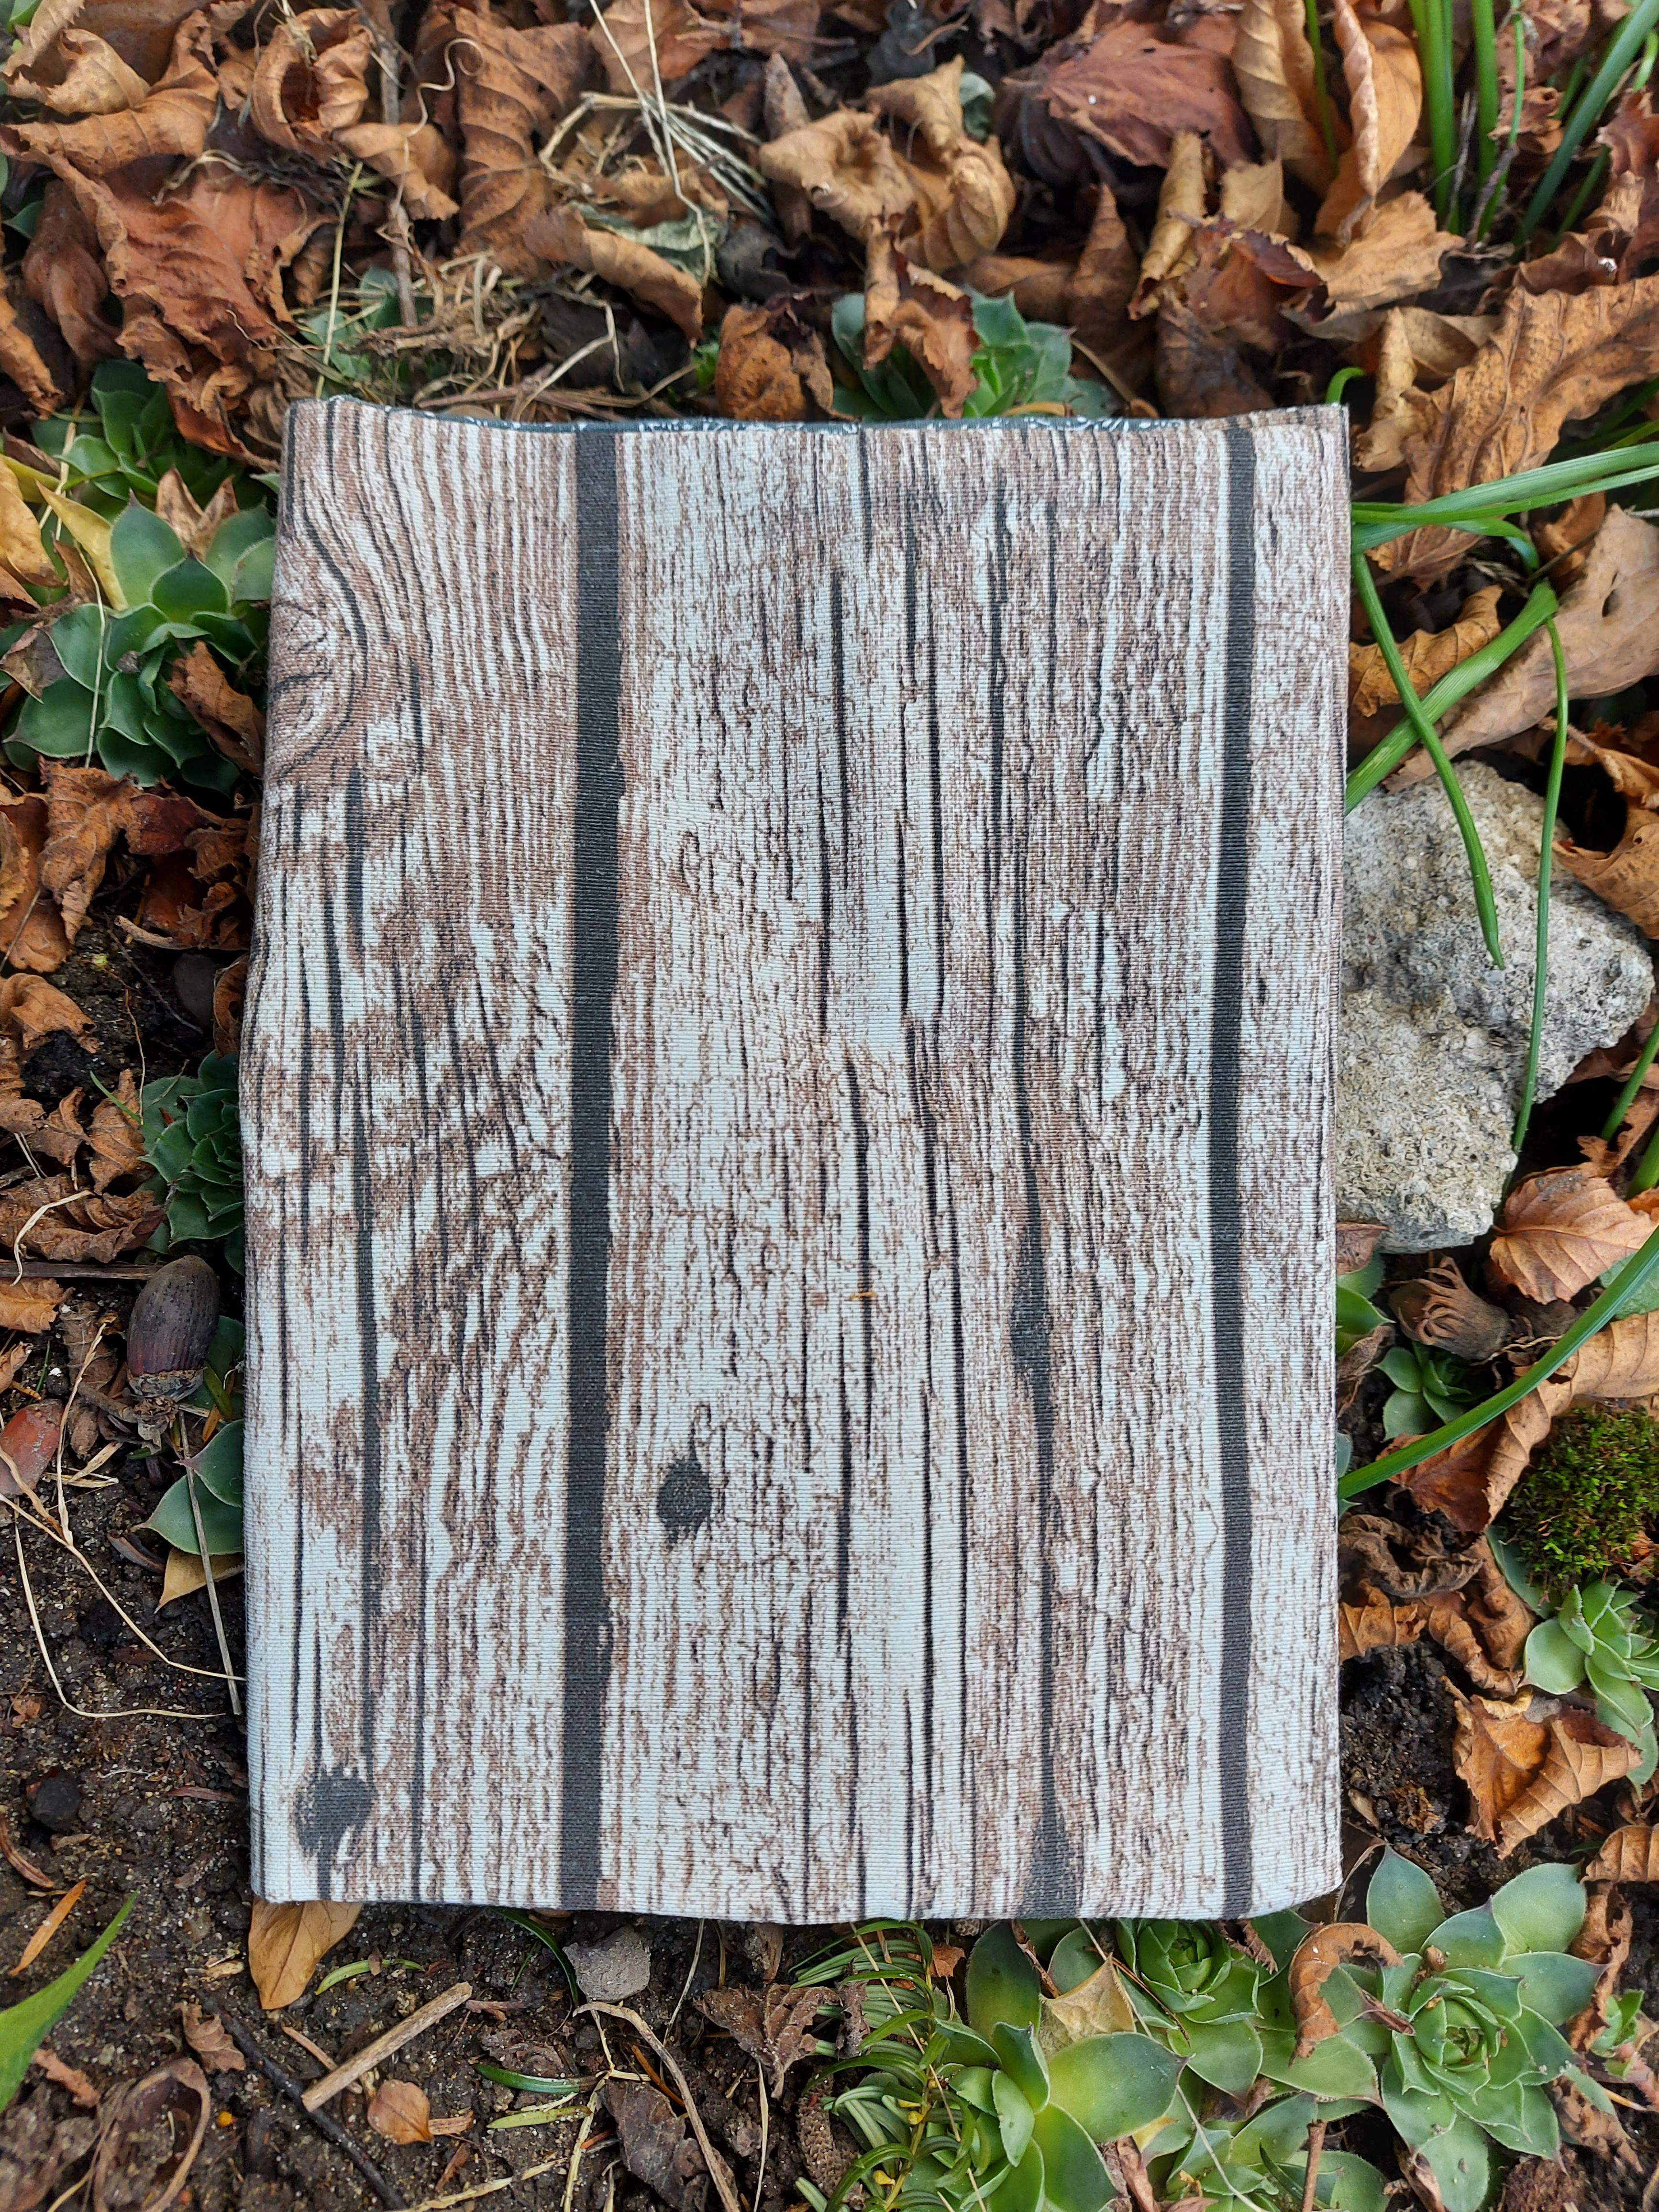 Látkový obal na knihu - dizajn drevo 2